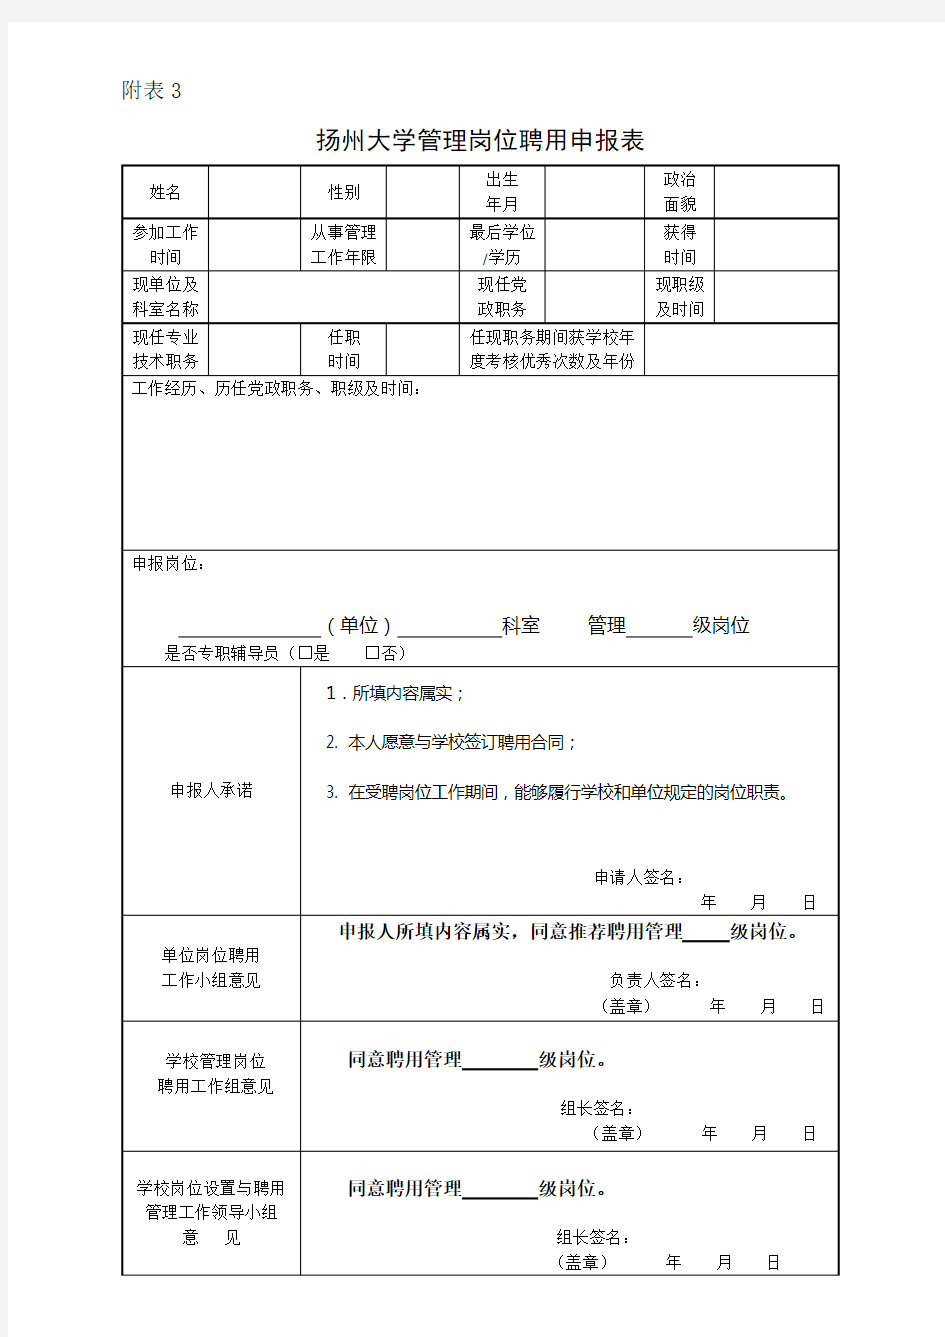 表格3：扬州大学管理岗位聘用申报表